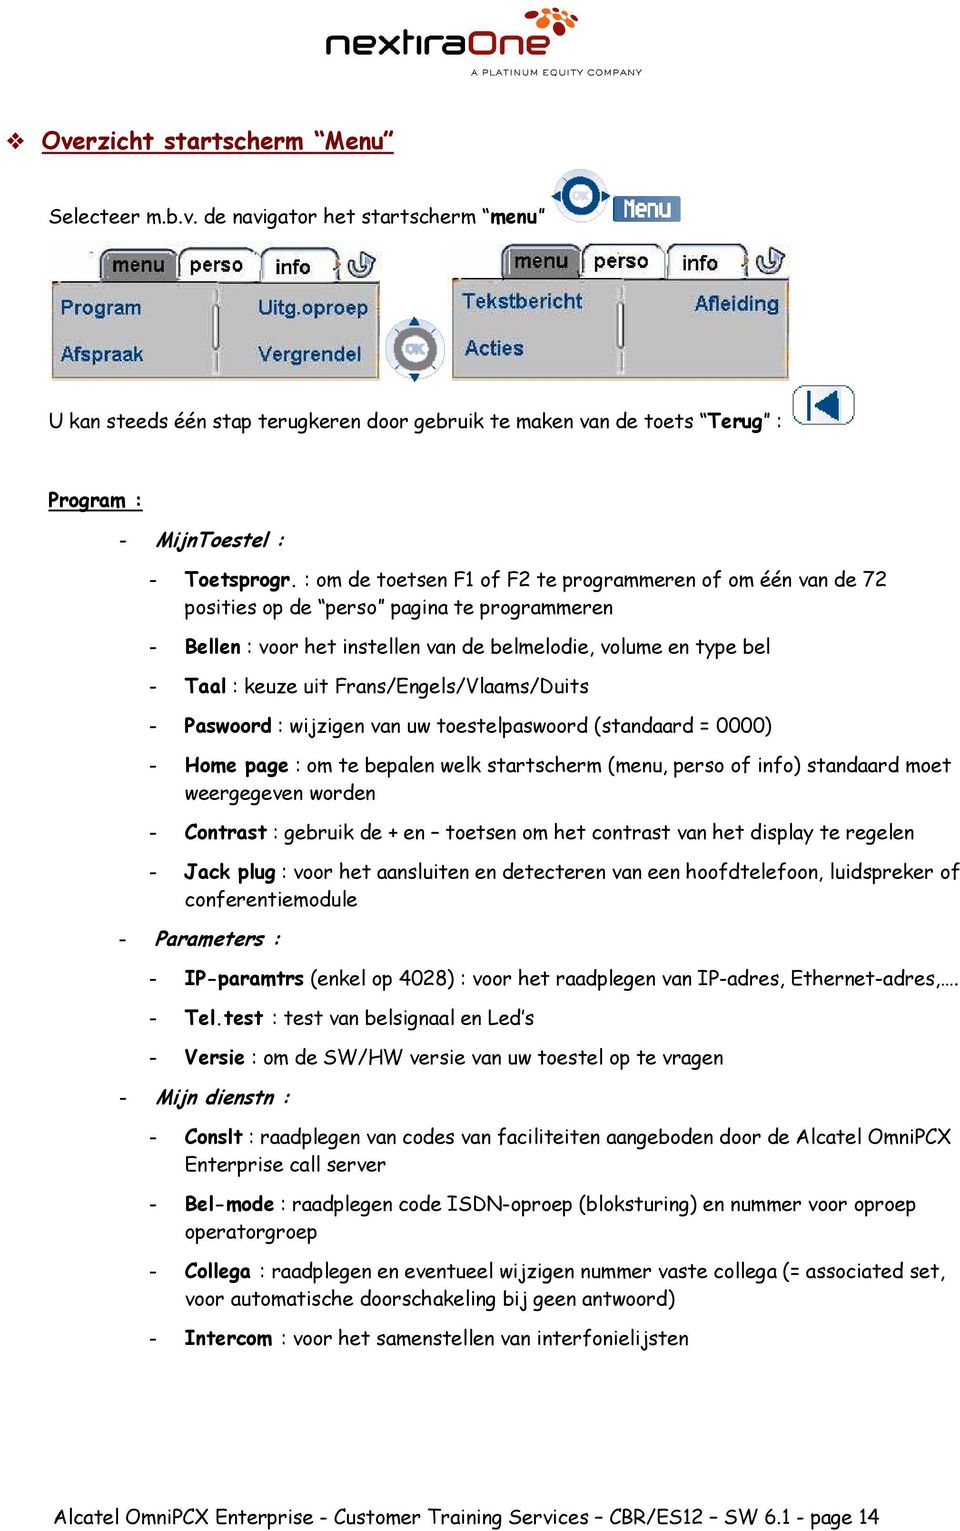 Frans/Engels/Vlaams/Duits - Paswoord : wijzigen van uw toestelpaswoord (standaard = 0000) - Home page : om te bepalen welk startscherm (menu, perso of info) standaard moet weergegeven worden -